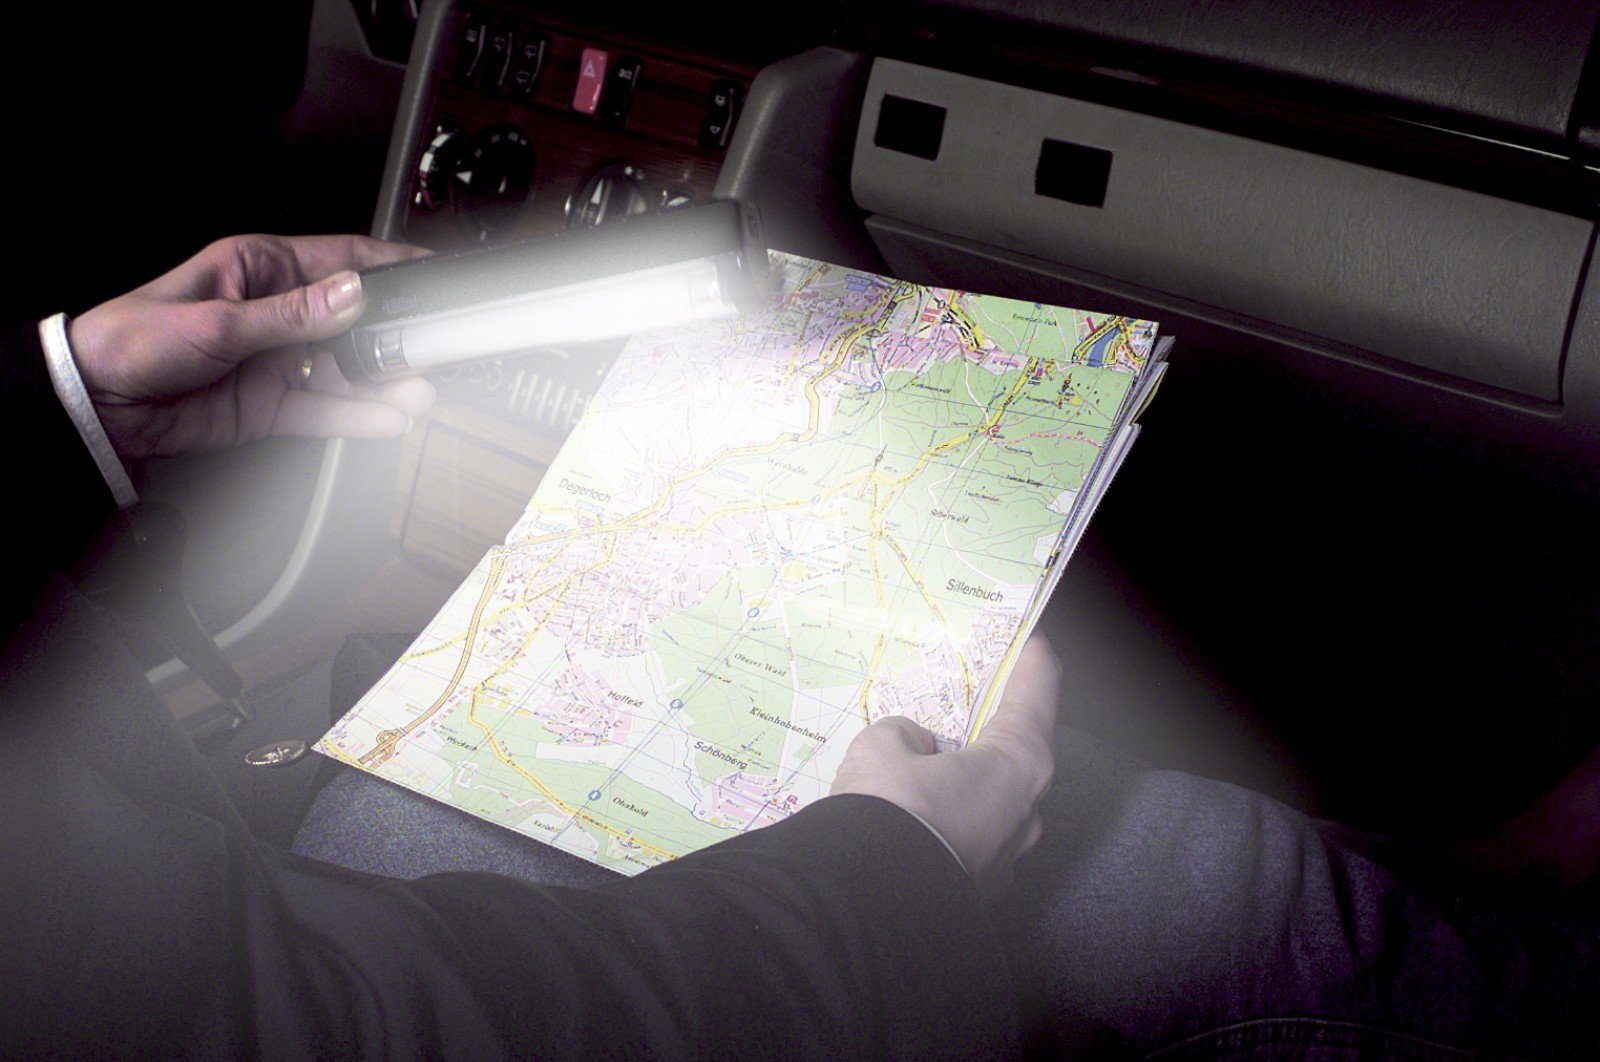 KFZ Zusatz HR Leuchte Leselampe Autocomfort Taschenlampe Ambiente Leuchte Leselicht Lampe Auto